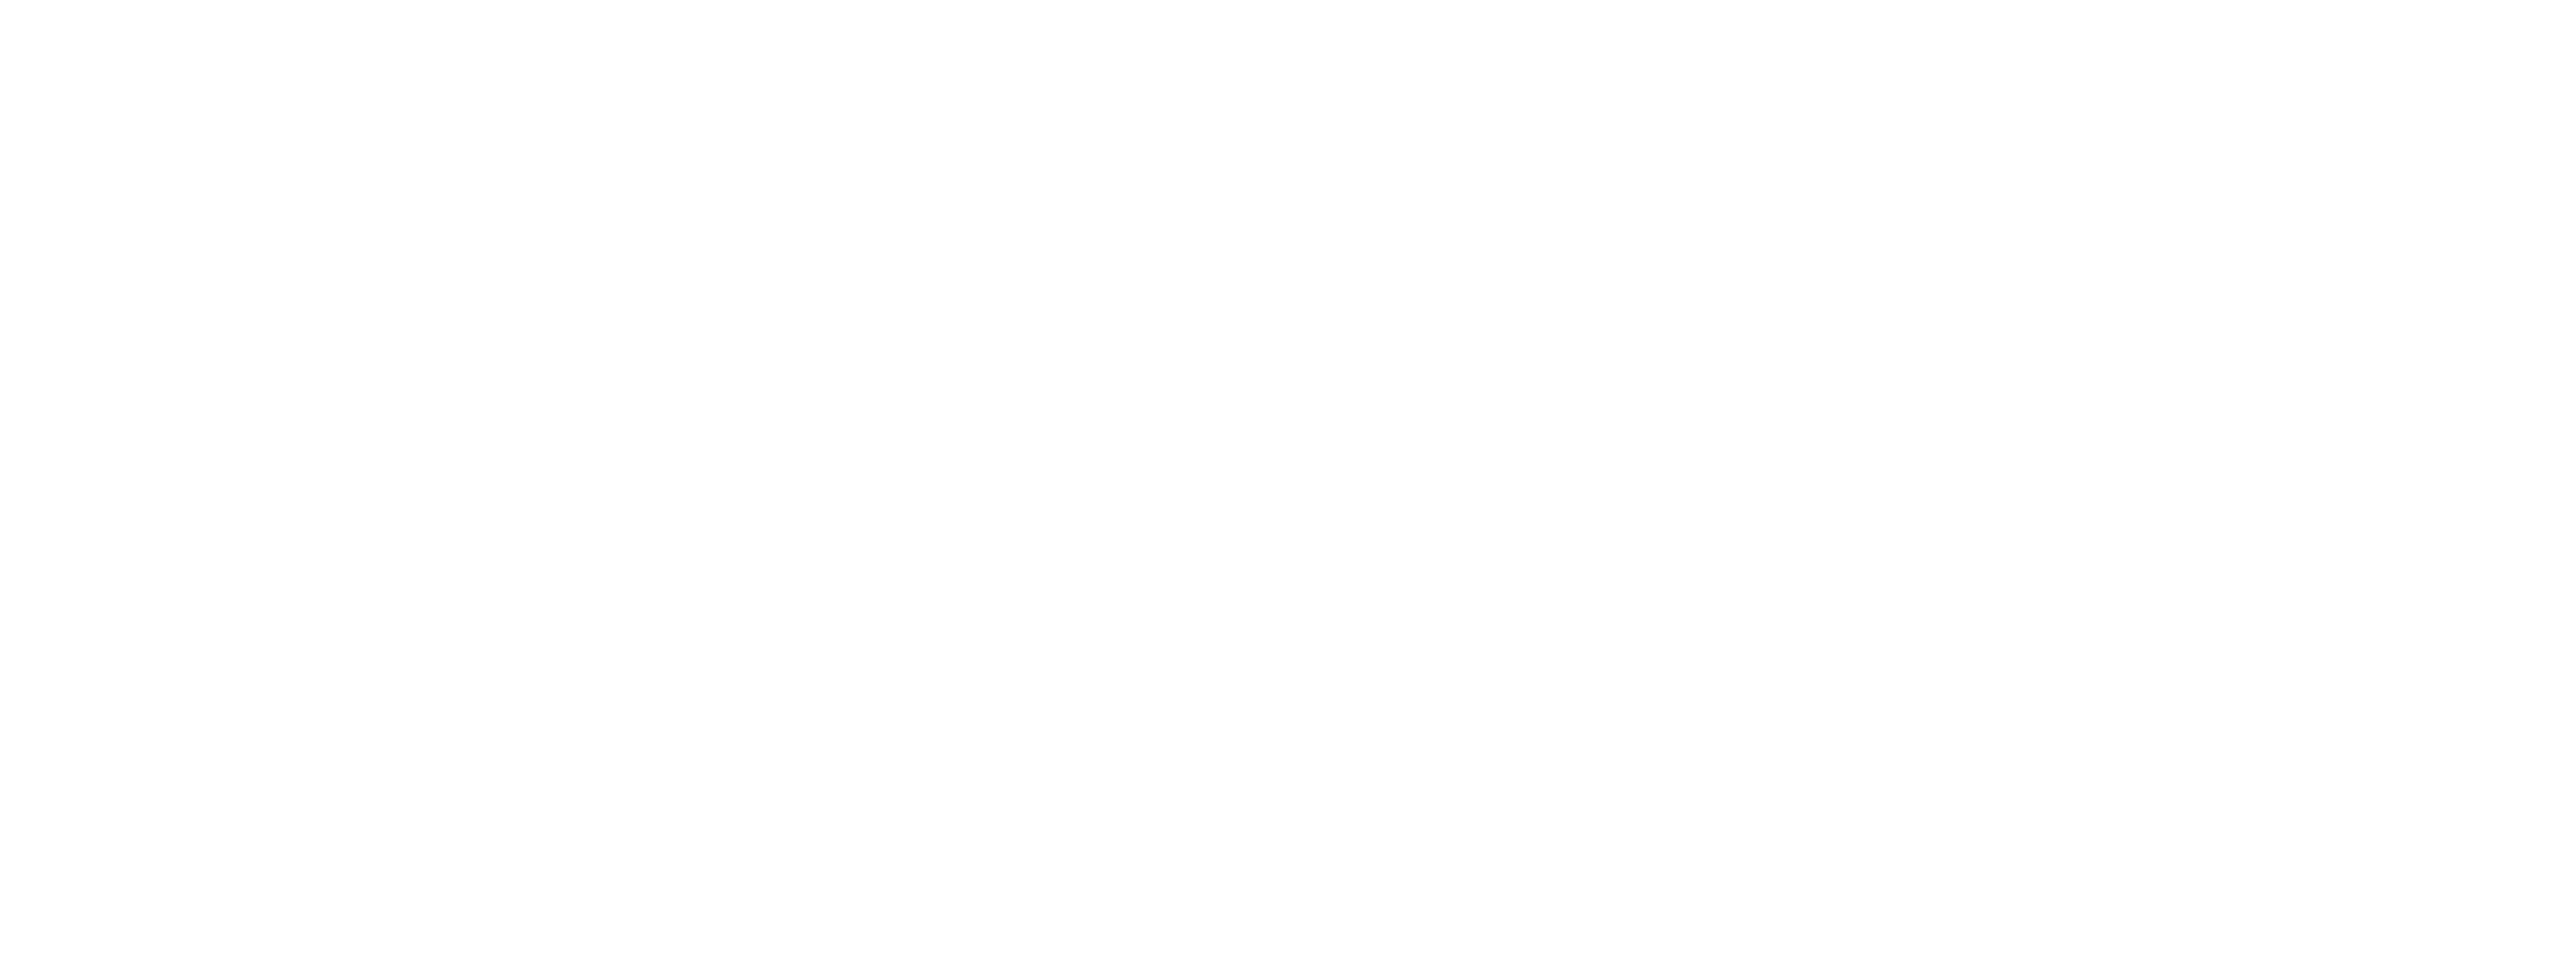 Newline Computers